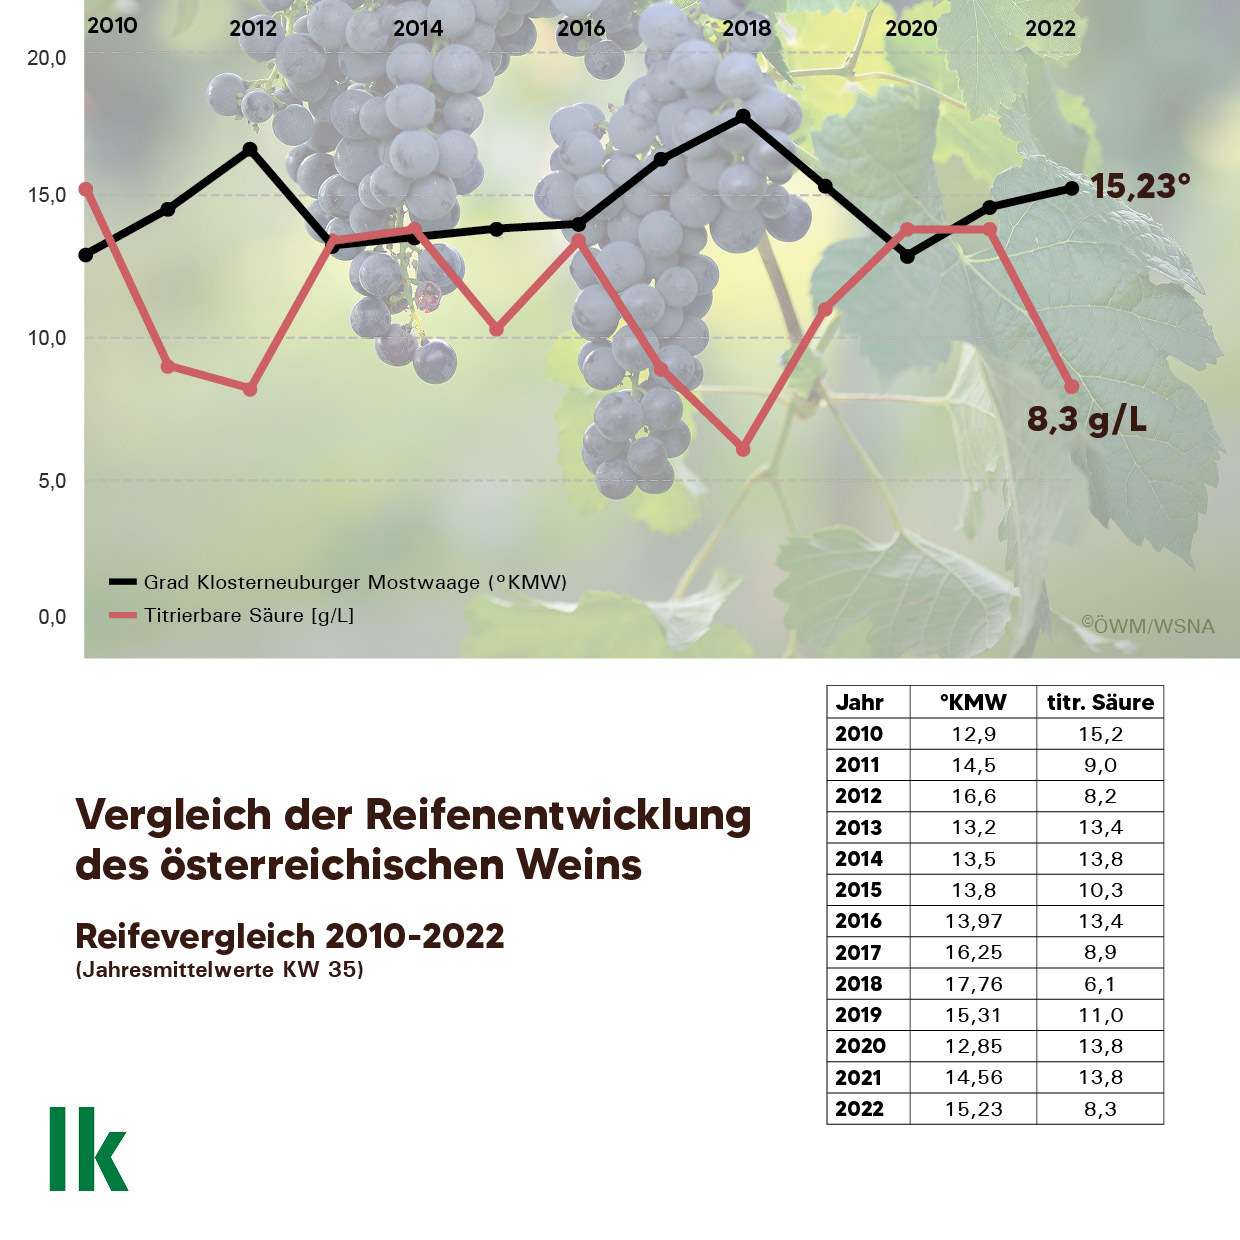 Vergleich der Reifeentwicklung des österreichischen Weins 2010-2022